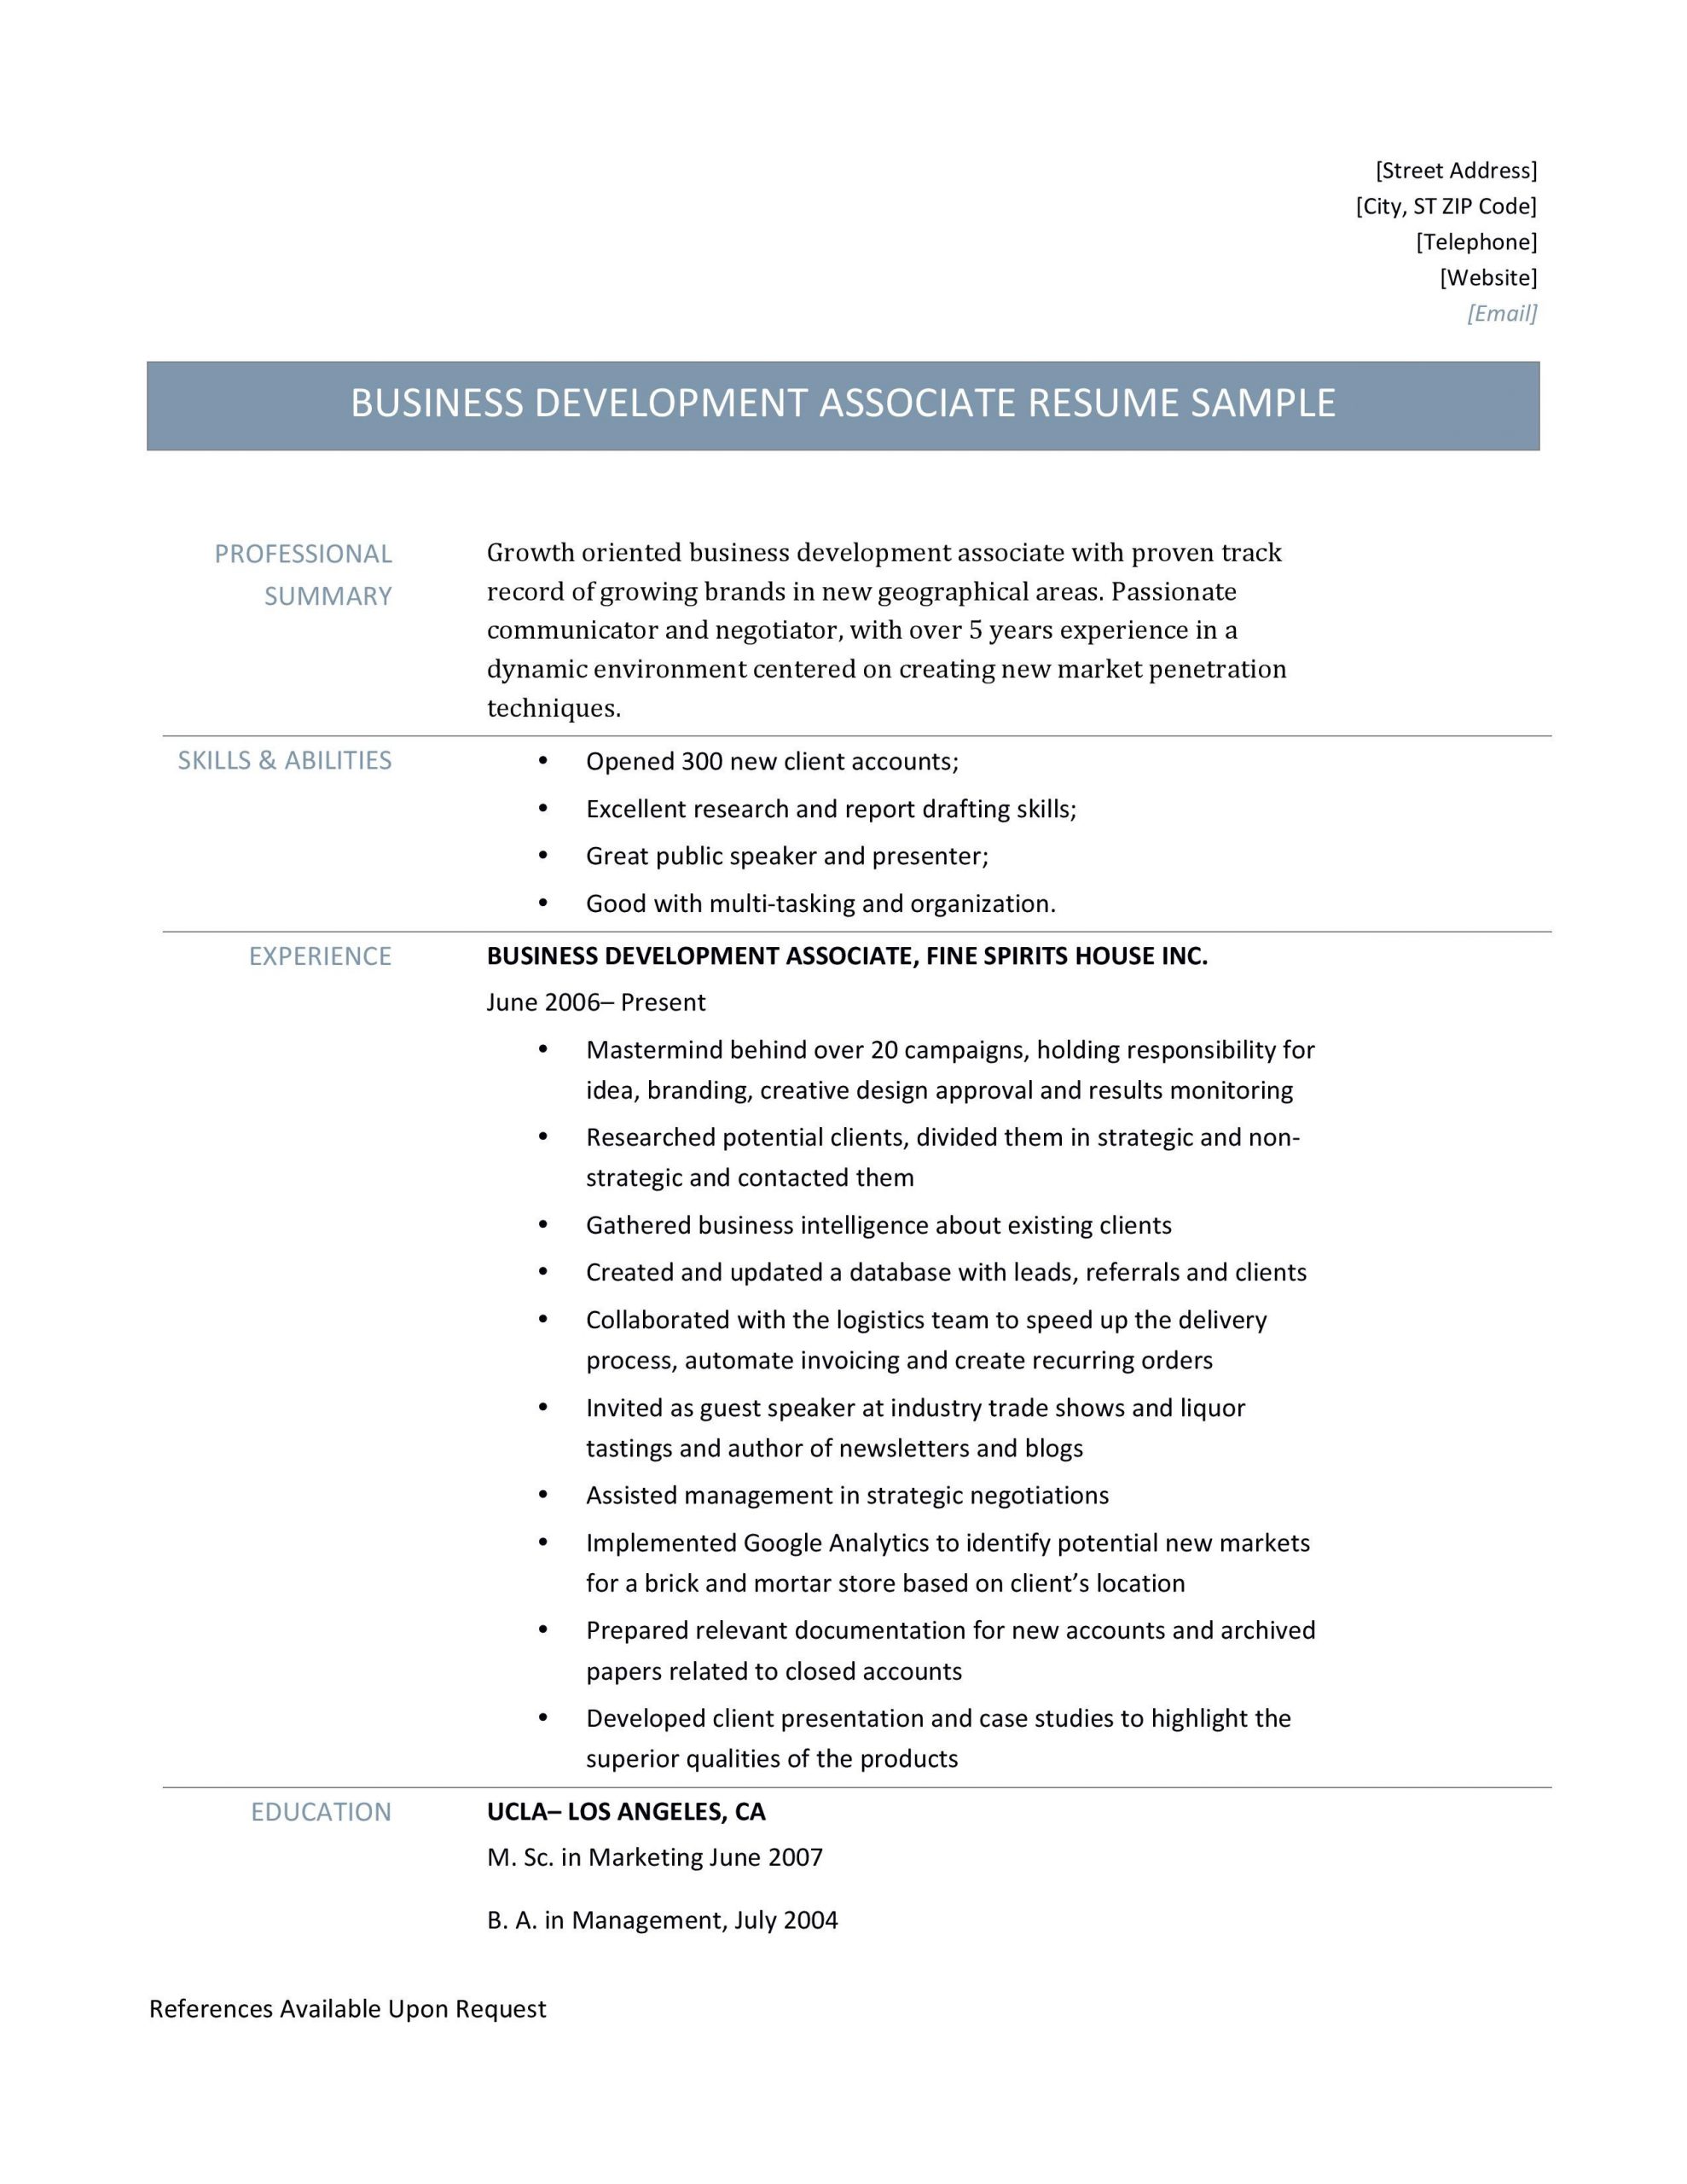 business development associate resume template and job description d1a8201cb397